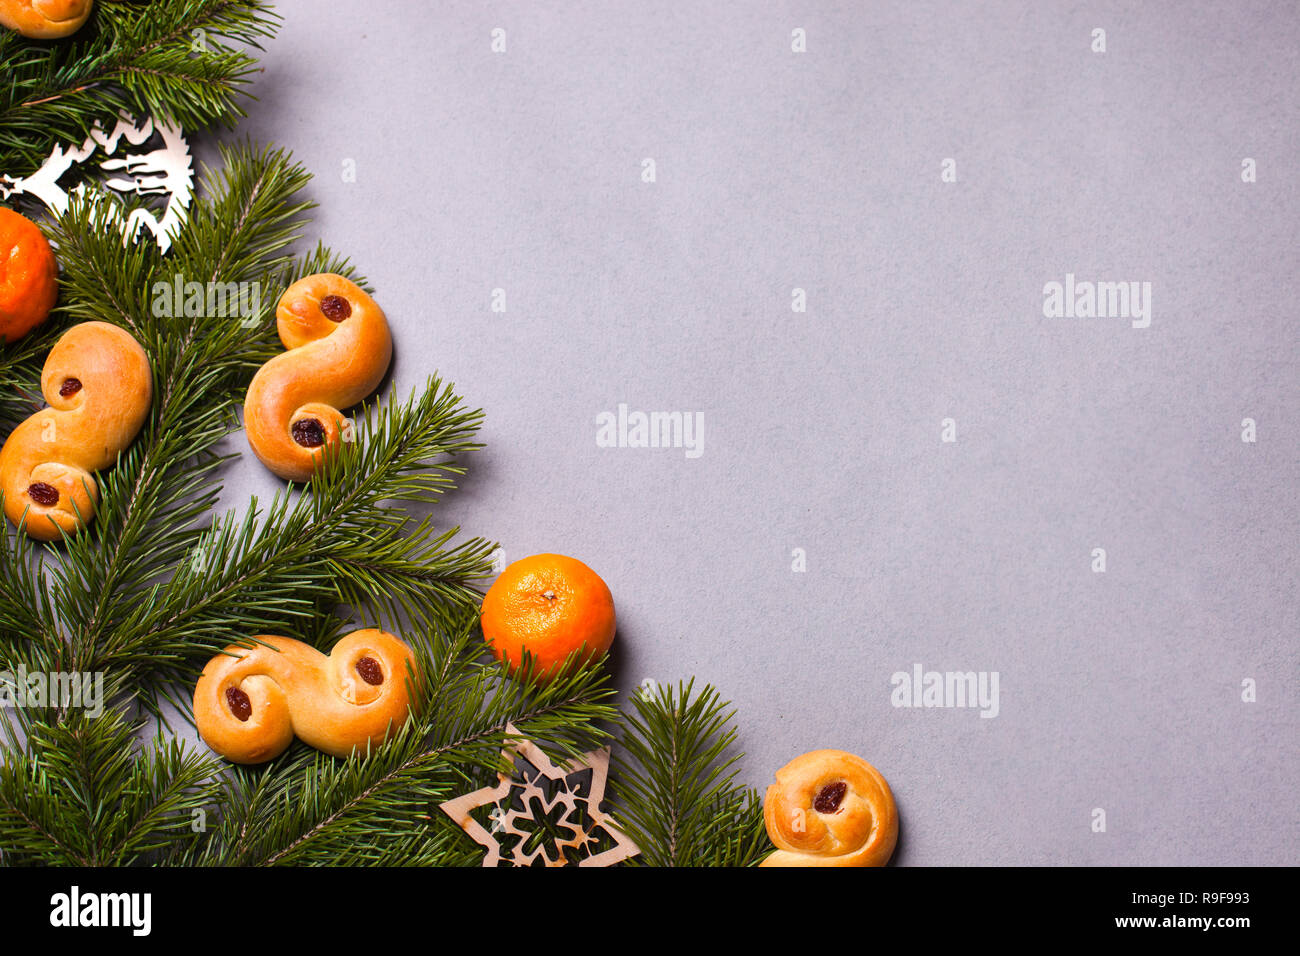 Châssis avec saffron buns traditionnels, la tradition en Suède à Lucia et de Noël, Décorations de Noël, en suédois langag appelé 'lussekatt' ou 'lussebull Banque D'Images